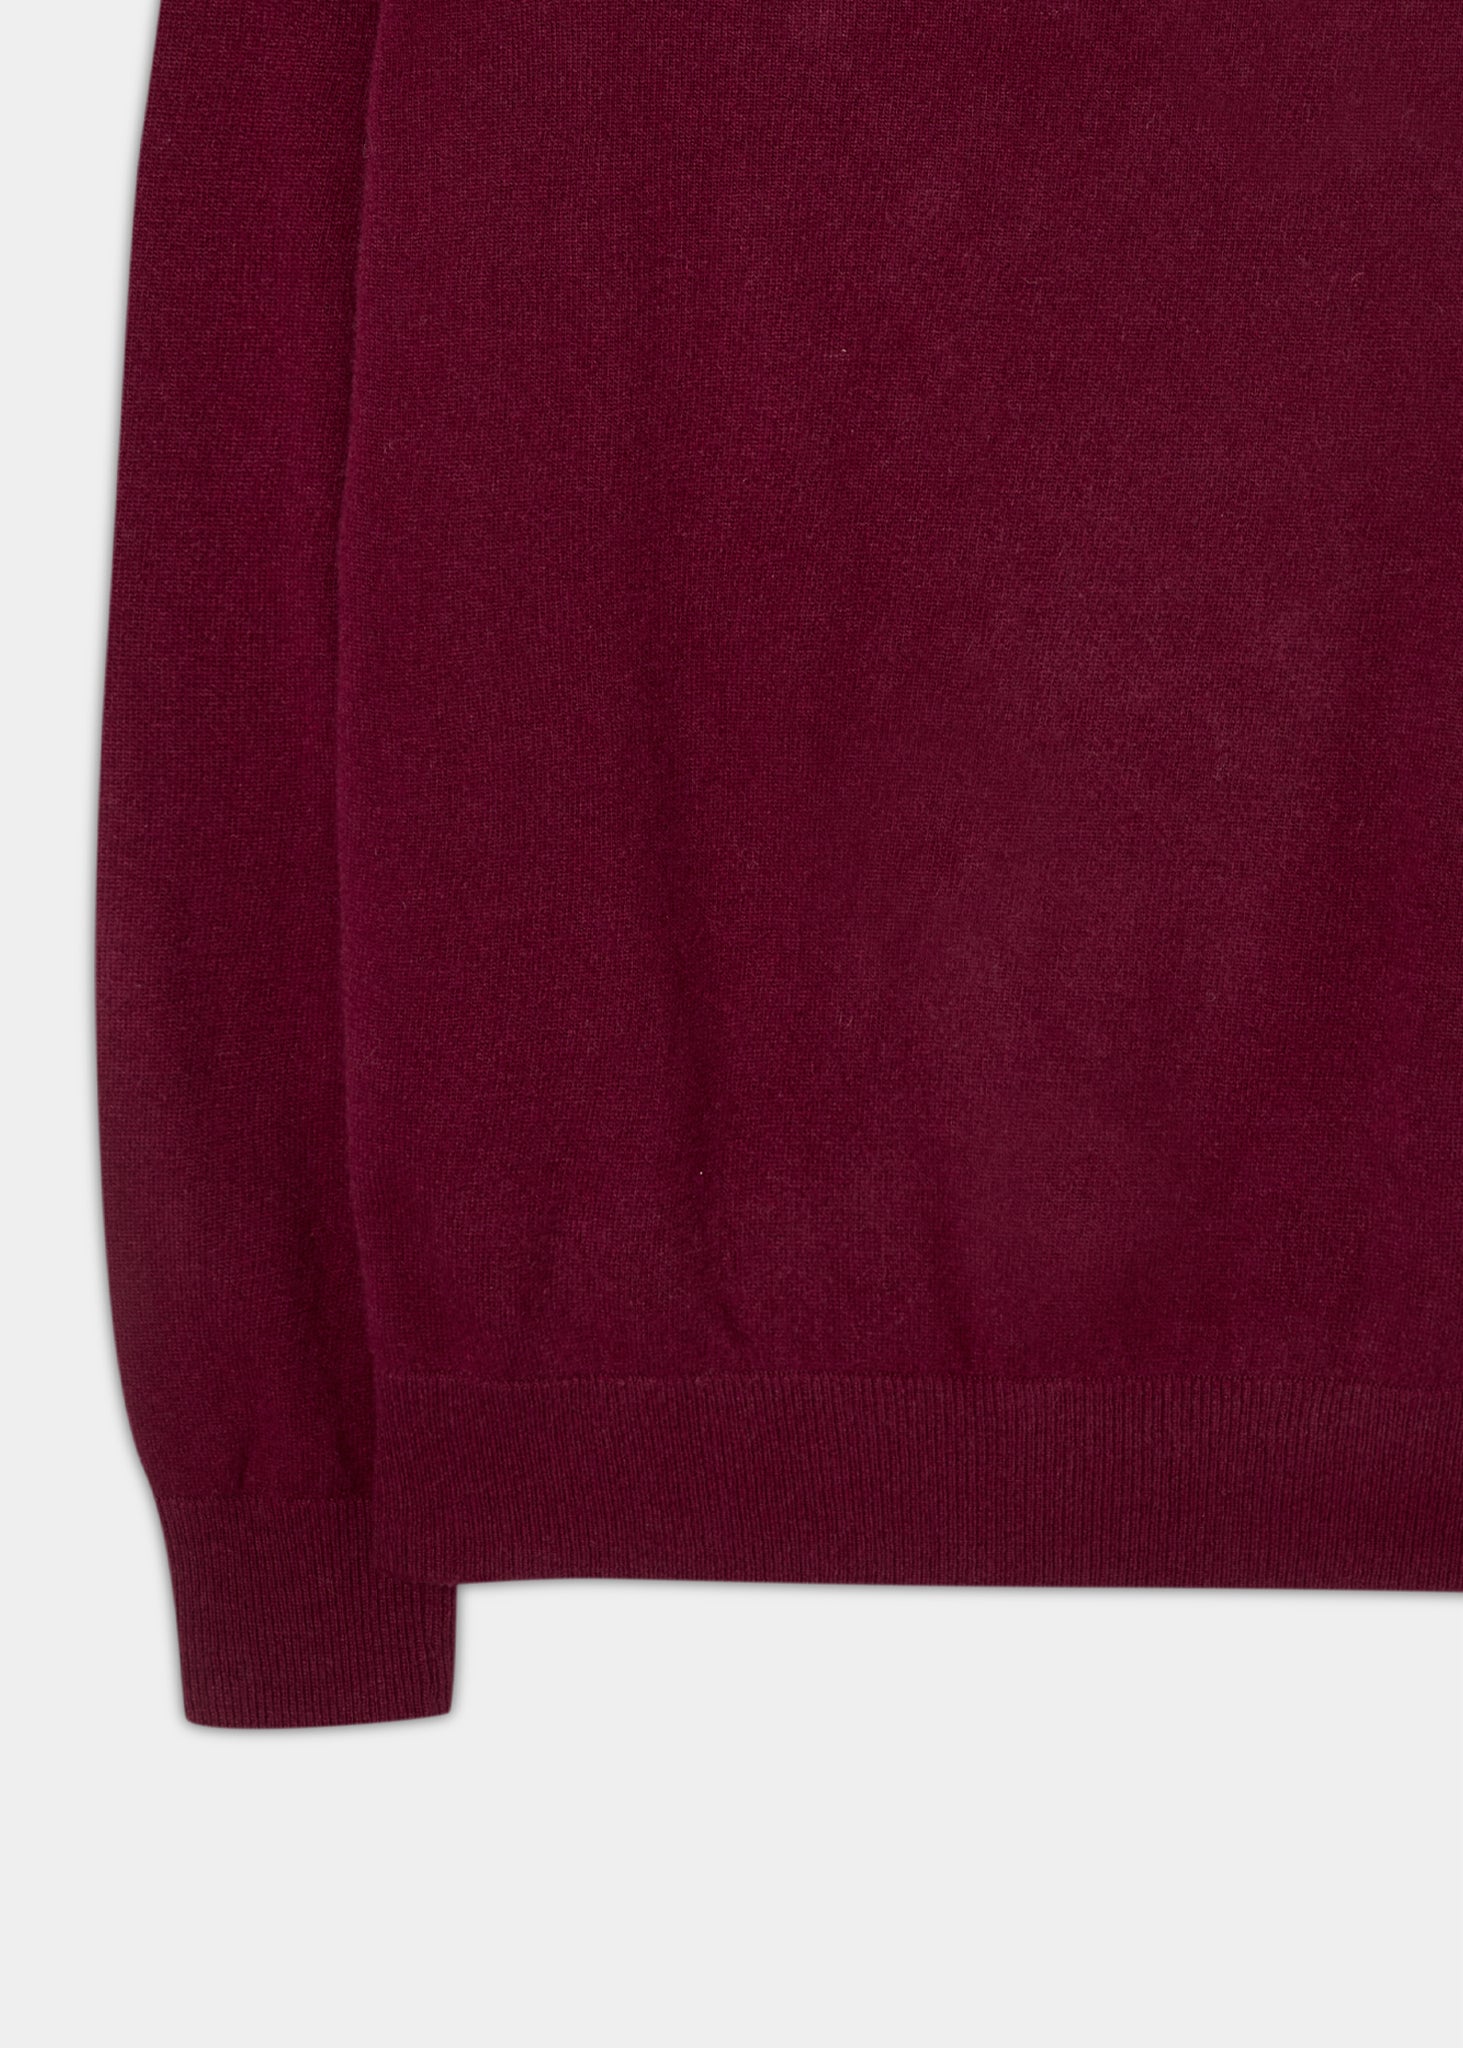 Geelong-Wool-Half-Zip-Sweater-Claret